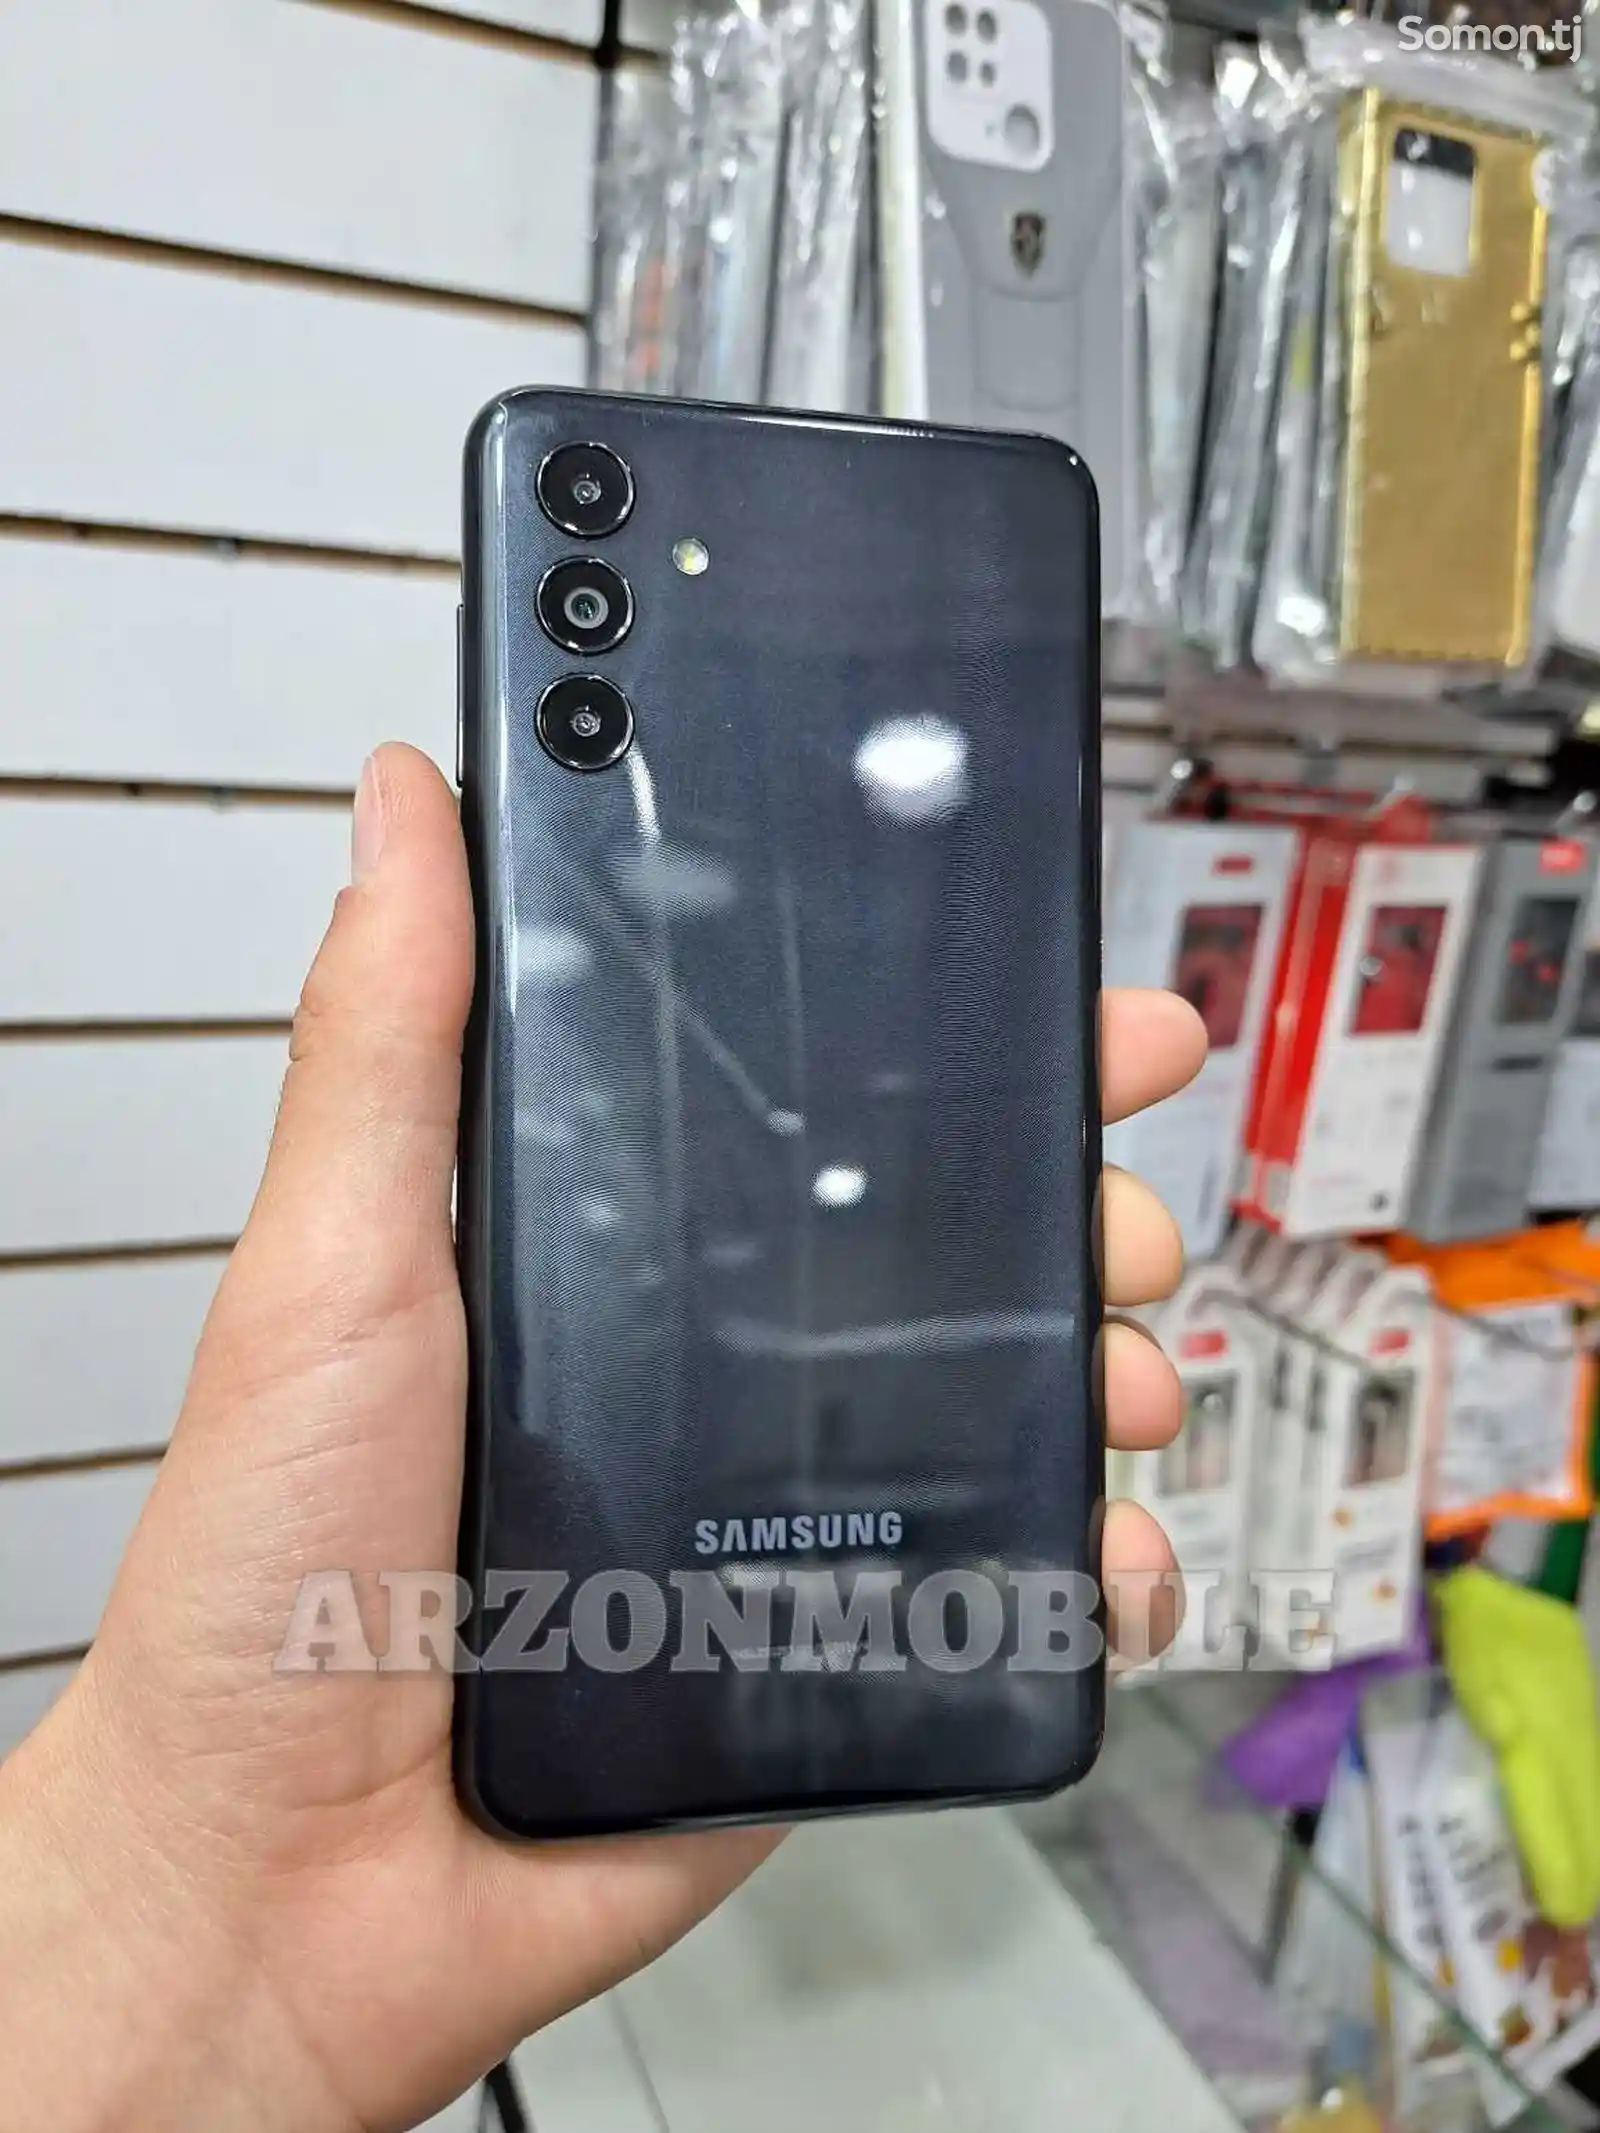 Samsung Galaxy A04s 64Gb Black-3